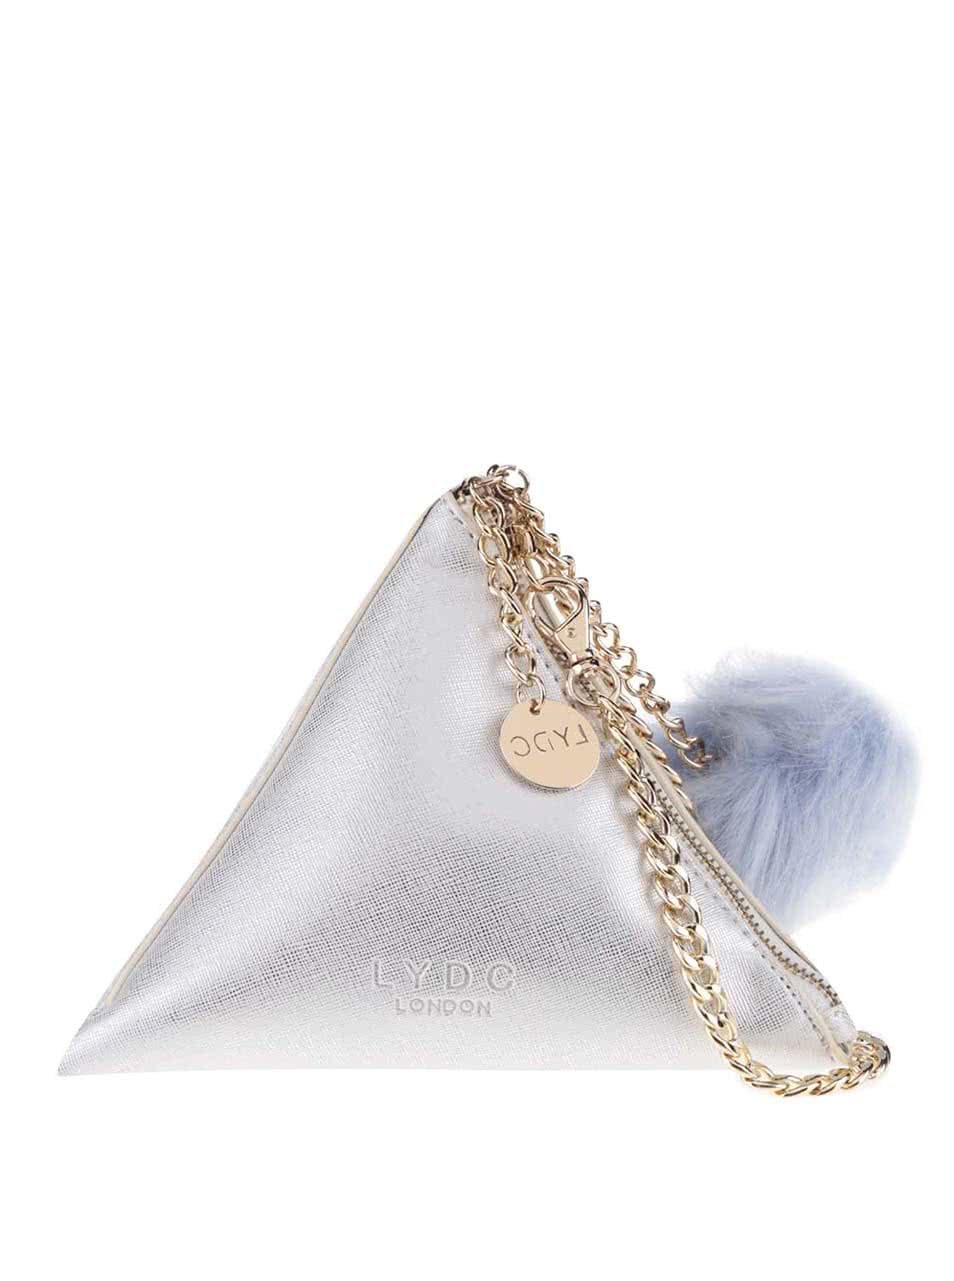 Malá kabelka trojúhelníkového tvaru ve stříbrné barvě LYDC